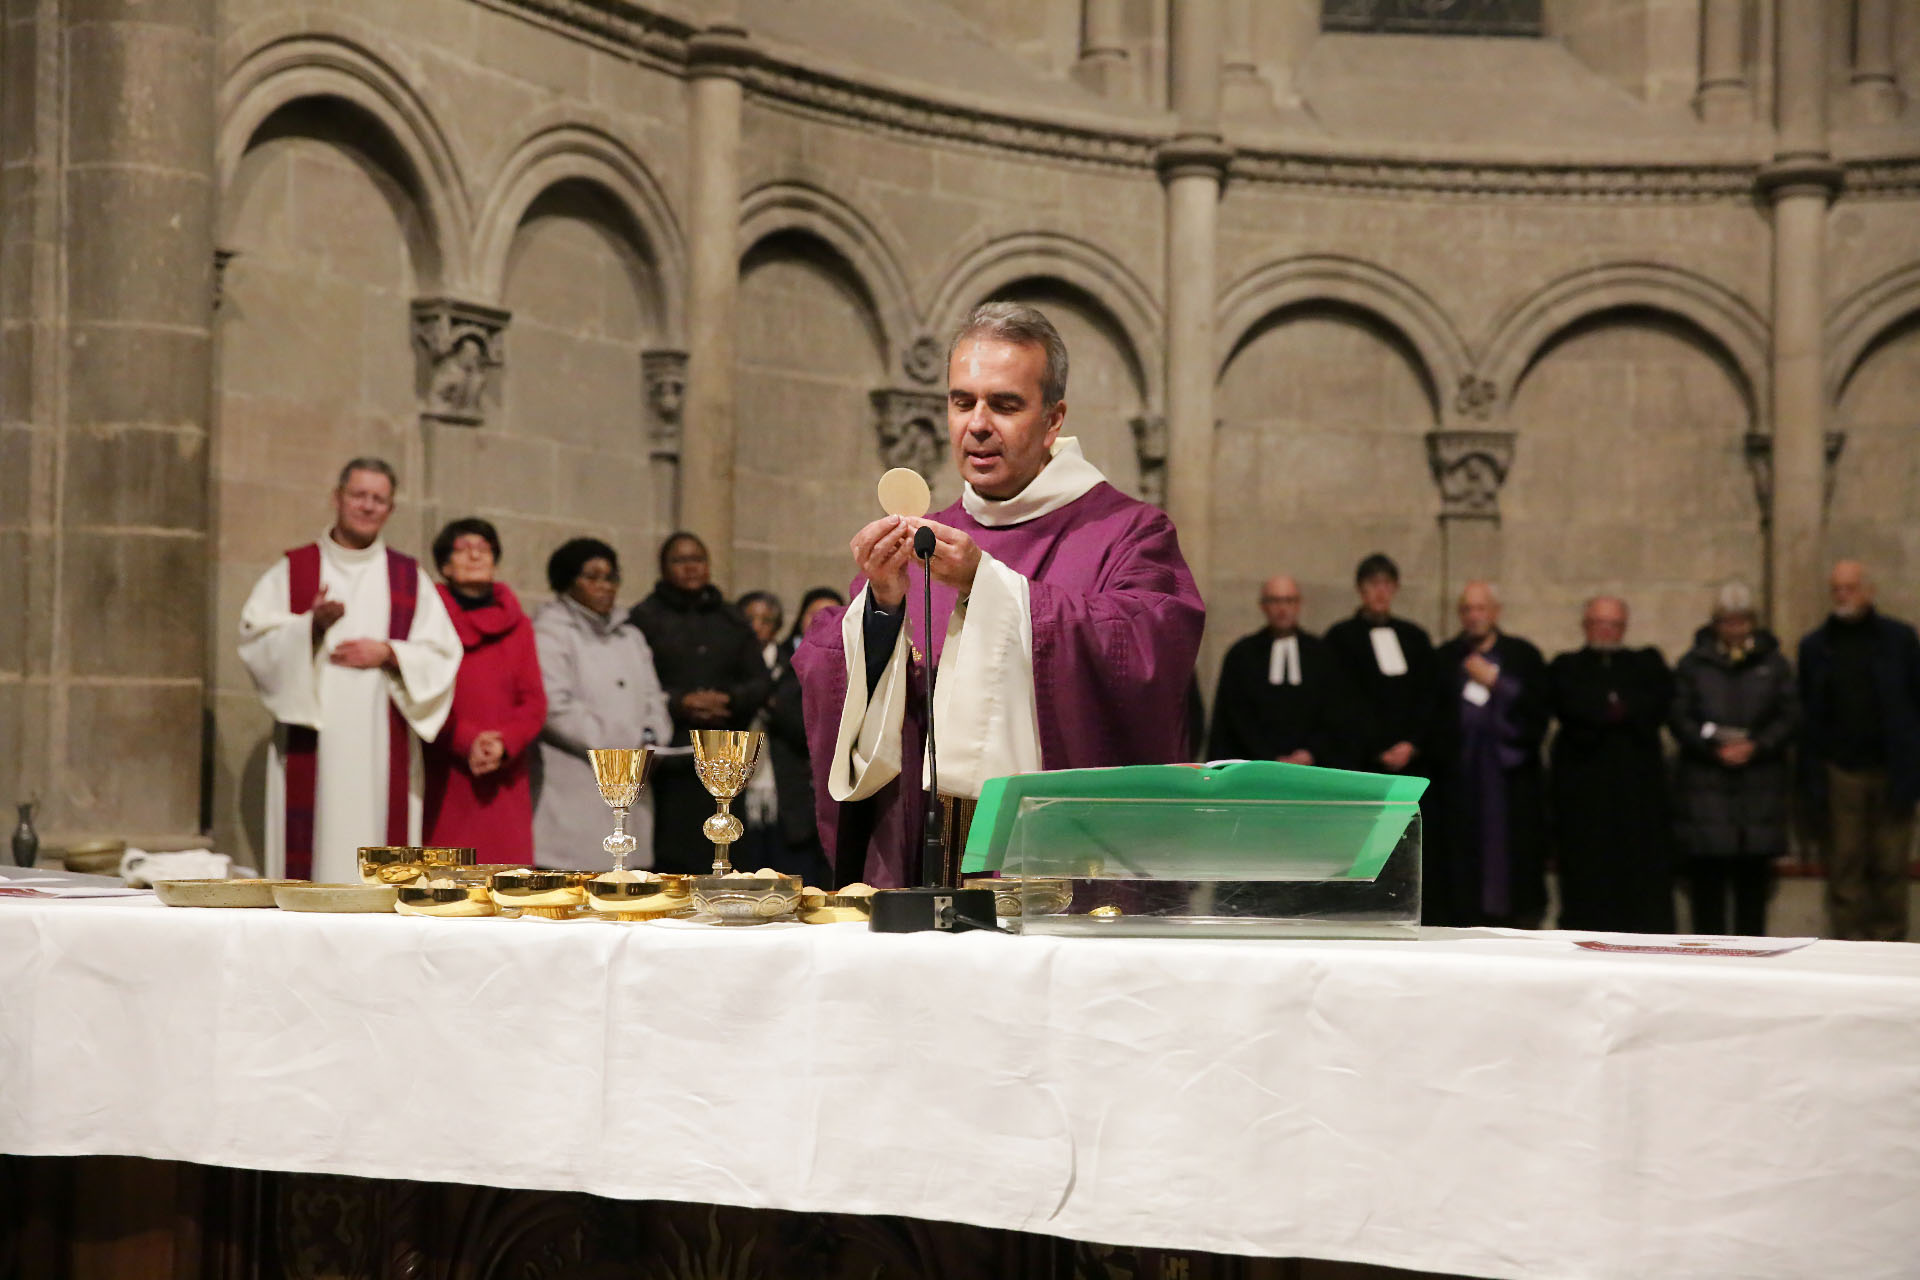 L'abbé Pascal Desthieux préside l'eucharistie dans la cathédrale de Genève lors d'une messe historique | © Bernard Hallet